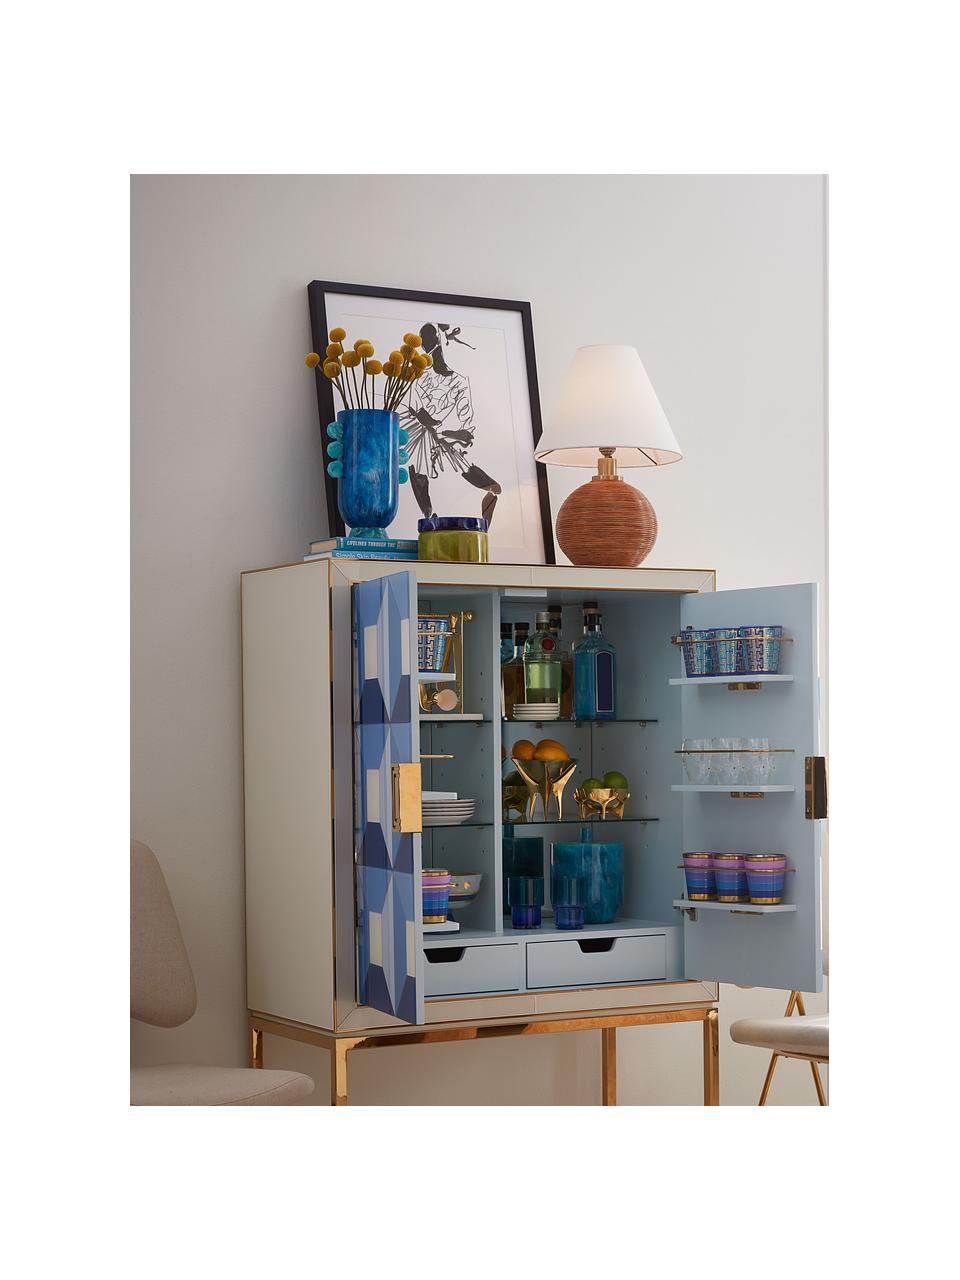 Handgefertigte Vase Mustique in Marmor-Optik, H 27 cm, Acryl, poliert, Marmor-Optik Blautöne, B 19 x H 27 cm